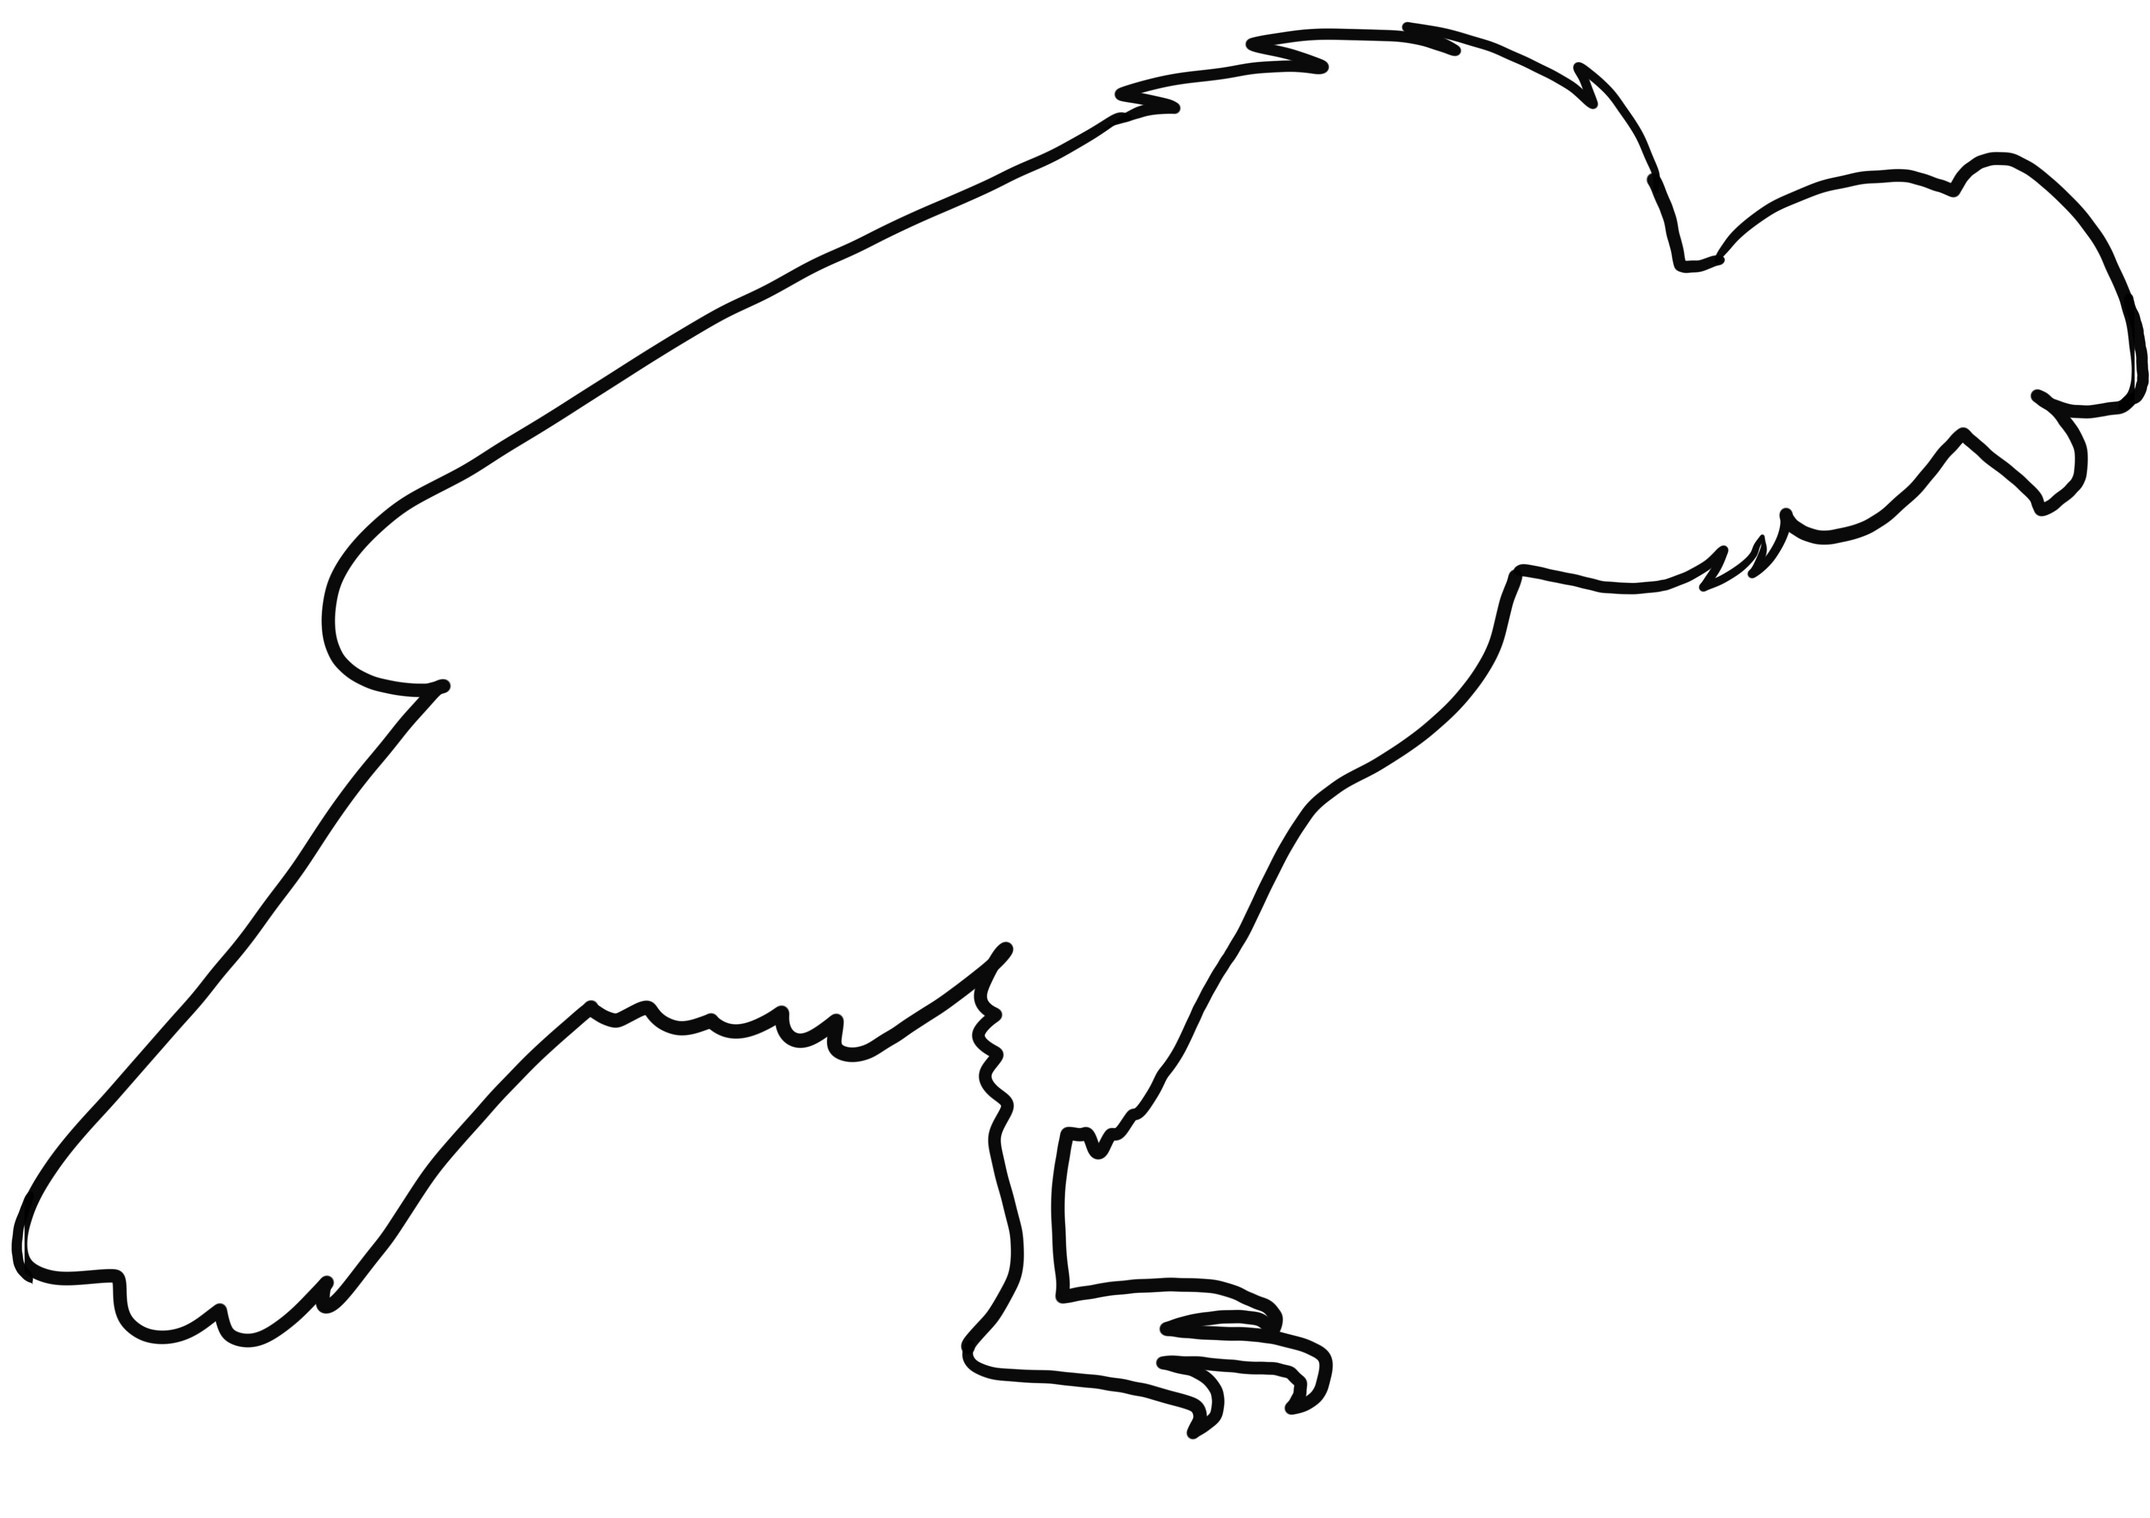 Disegno di condor realistico da colorare